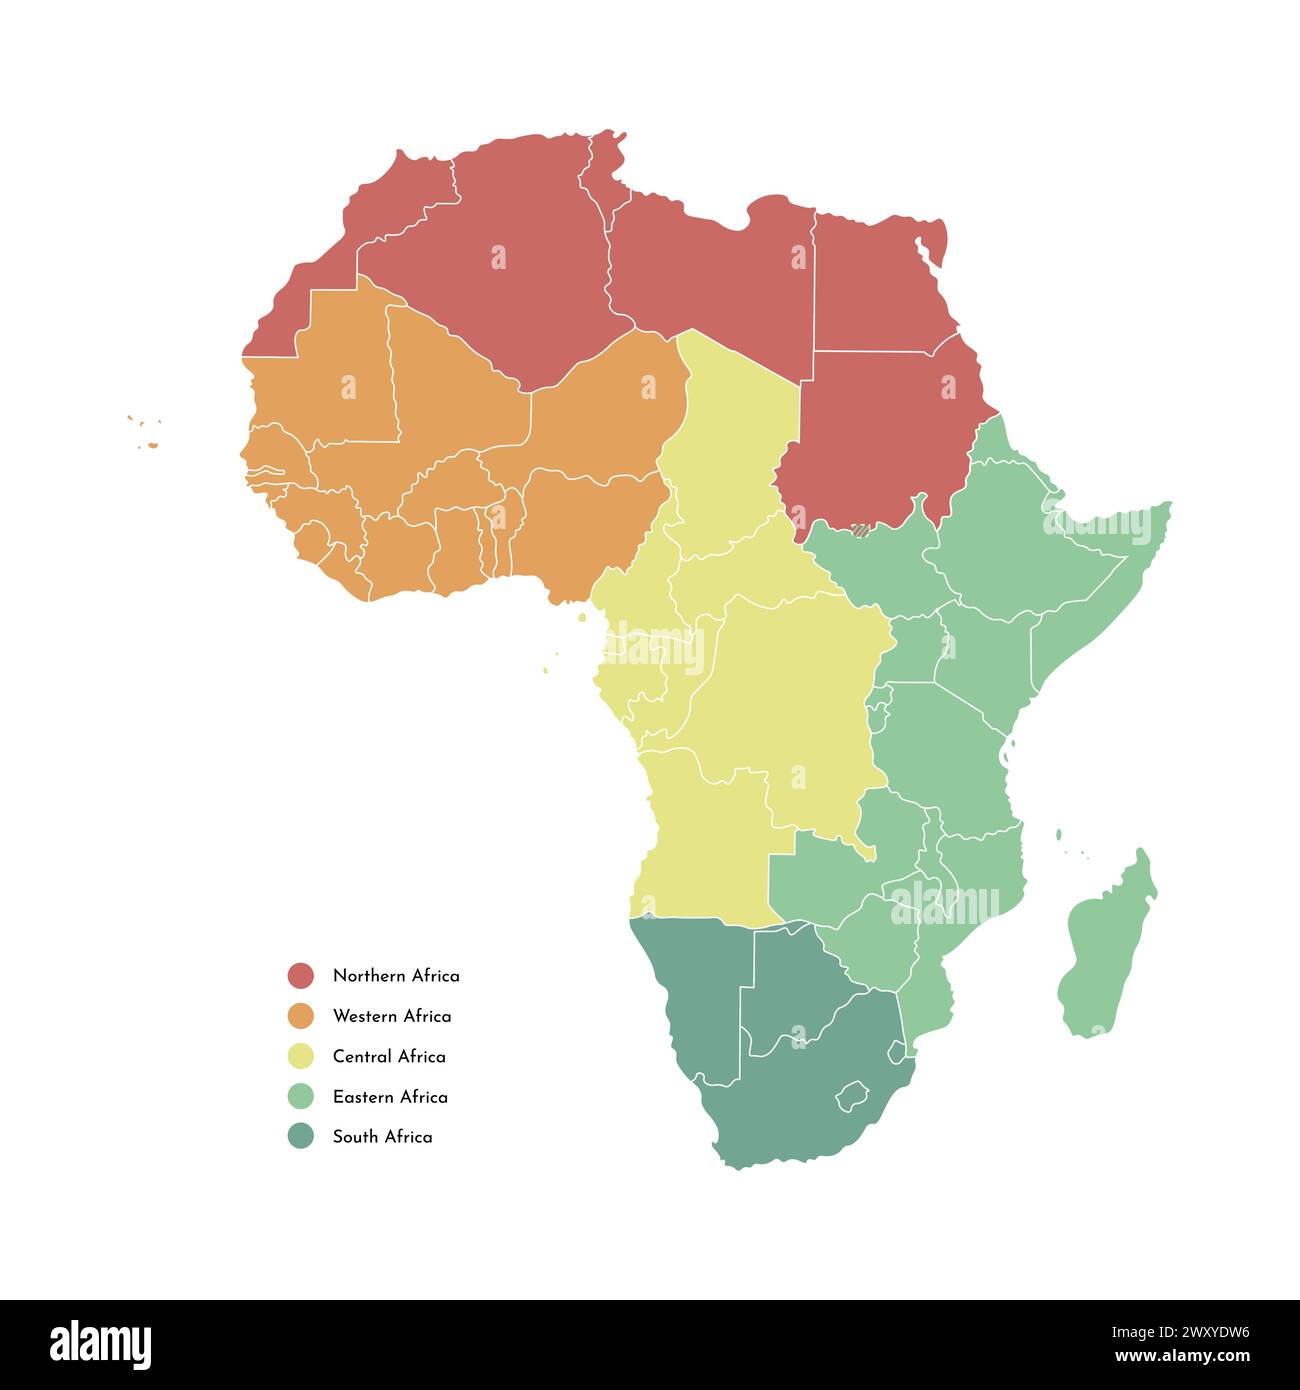 Illustrazione vettoriale isolata con continente africano con confini di tutti gli stati. Mappa politica con i nomi delle regioni. Sfondo e contorno bianchi Illustrazione Vettoriale